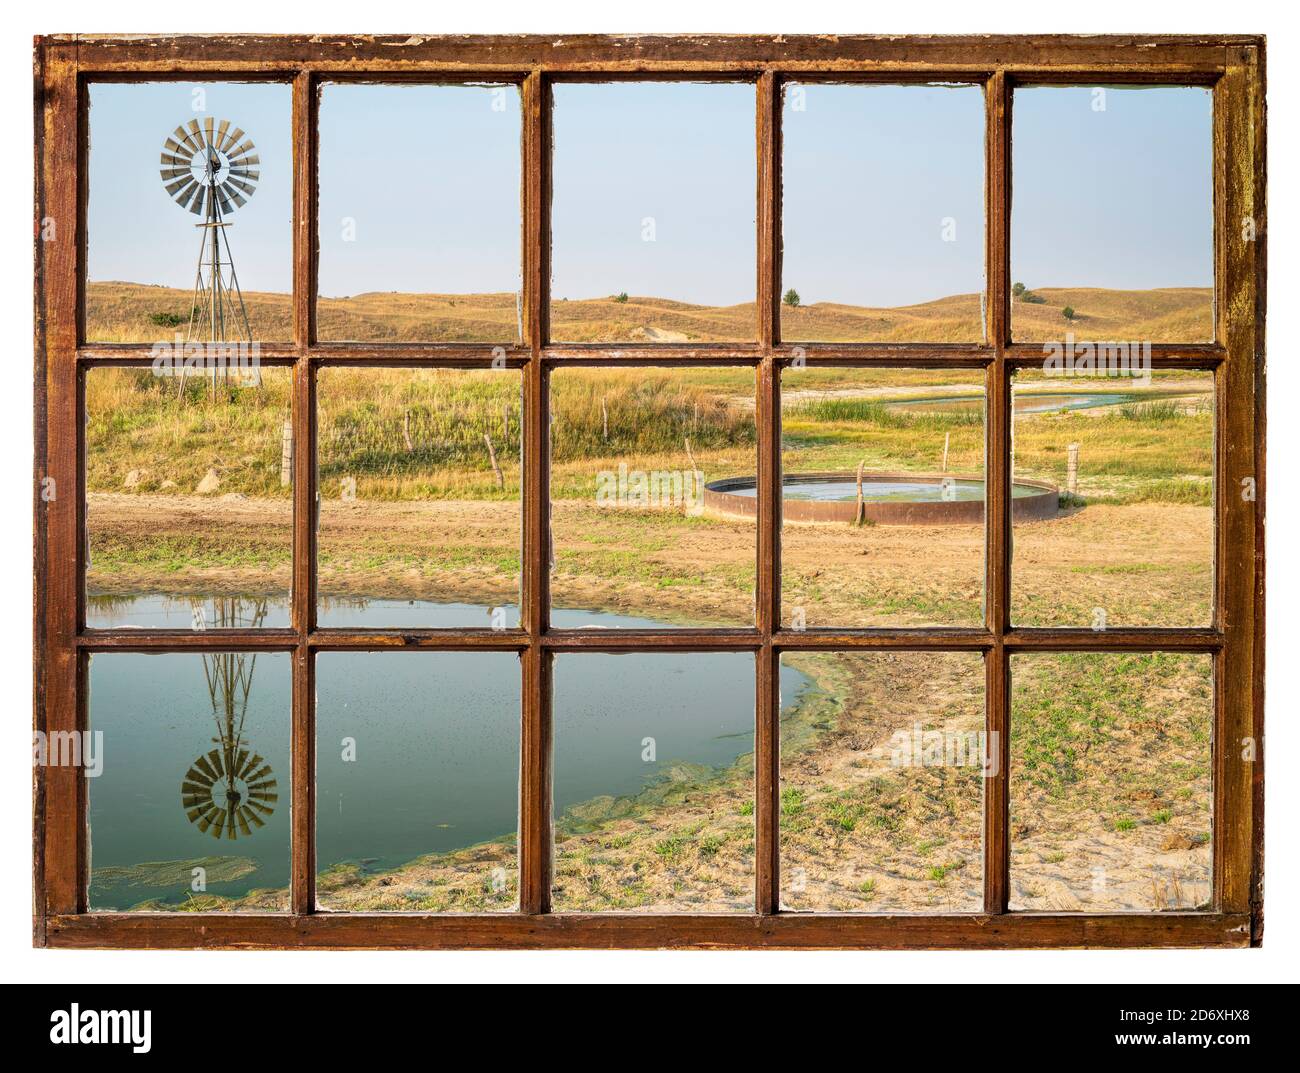 Trou de boisson de bétail dans une prairie de Nebraska Sandhills - paysage d'automne le matin vu d'une fenêtre à guillotine vintage Banque D'Images